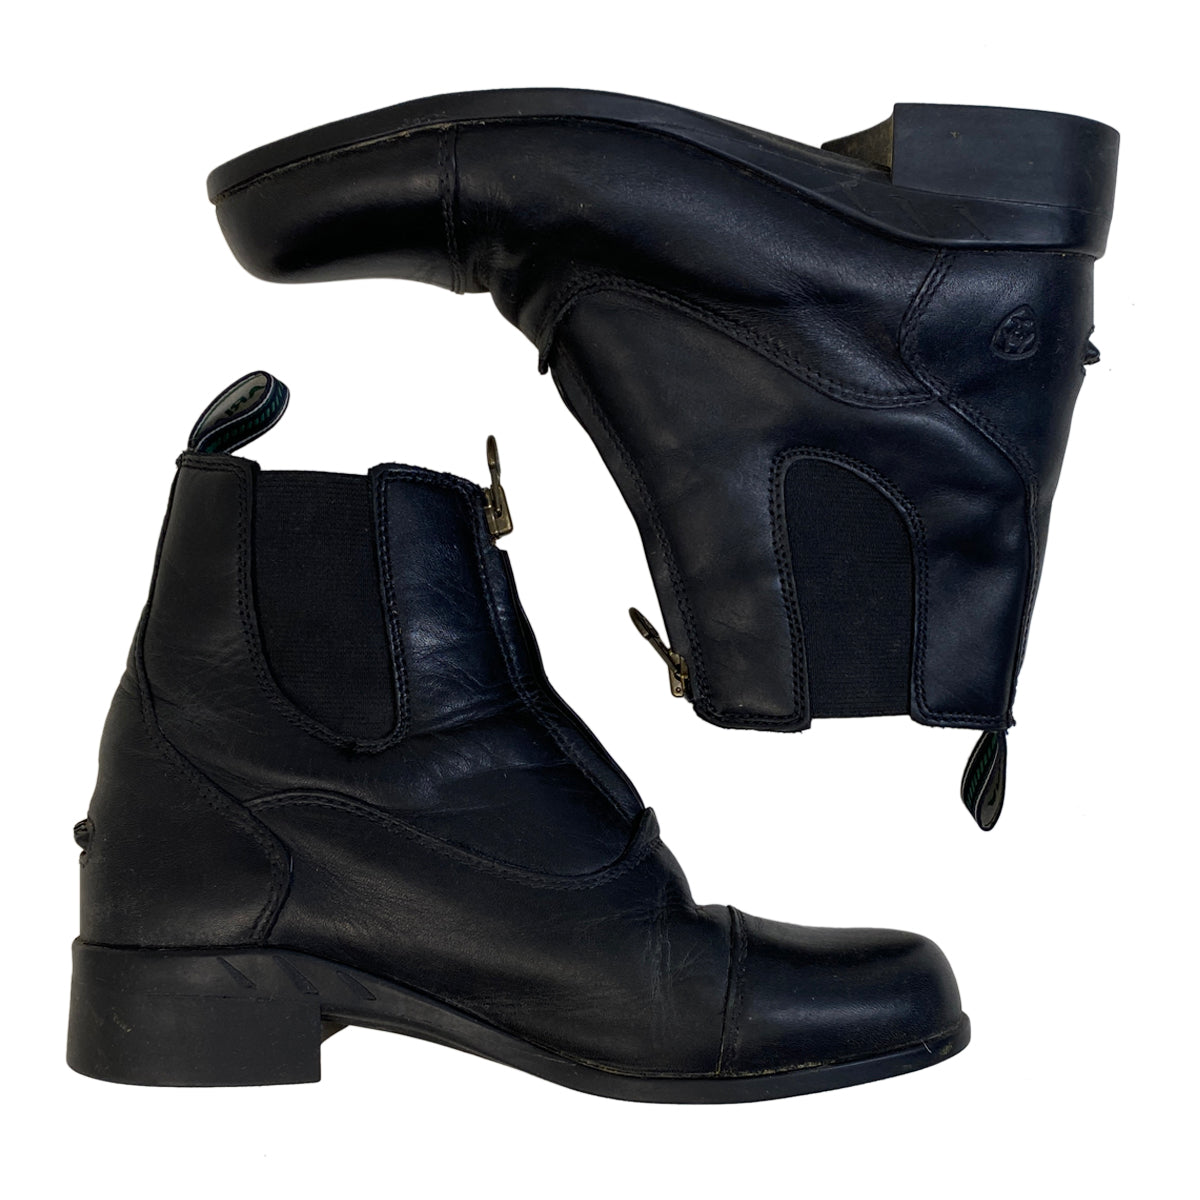 Ariat Devon IV Paddock Boots in Black